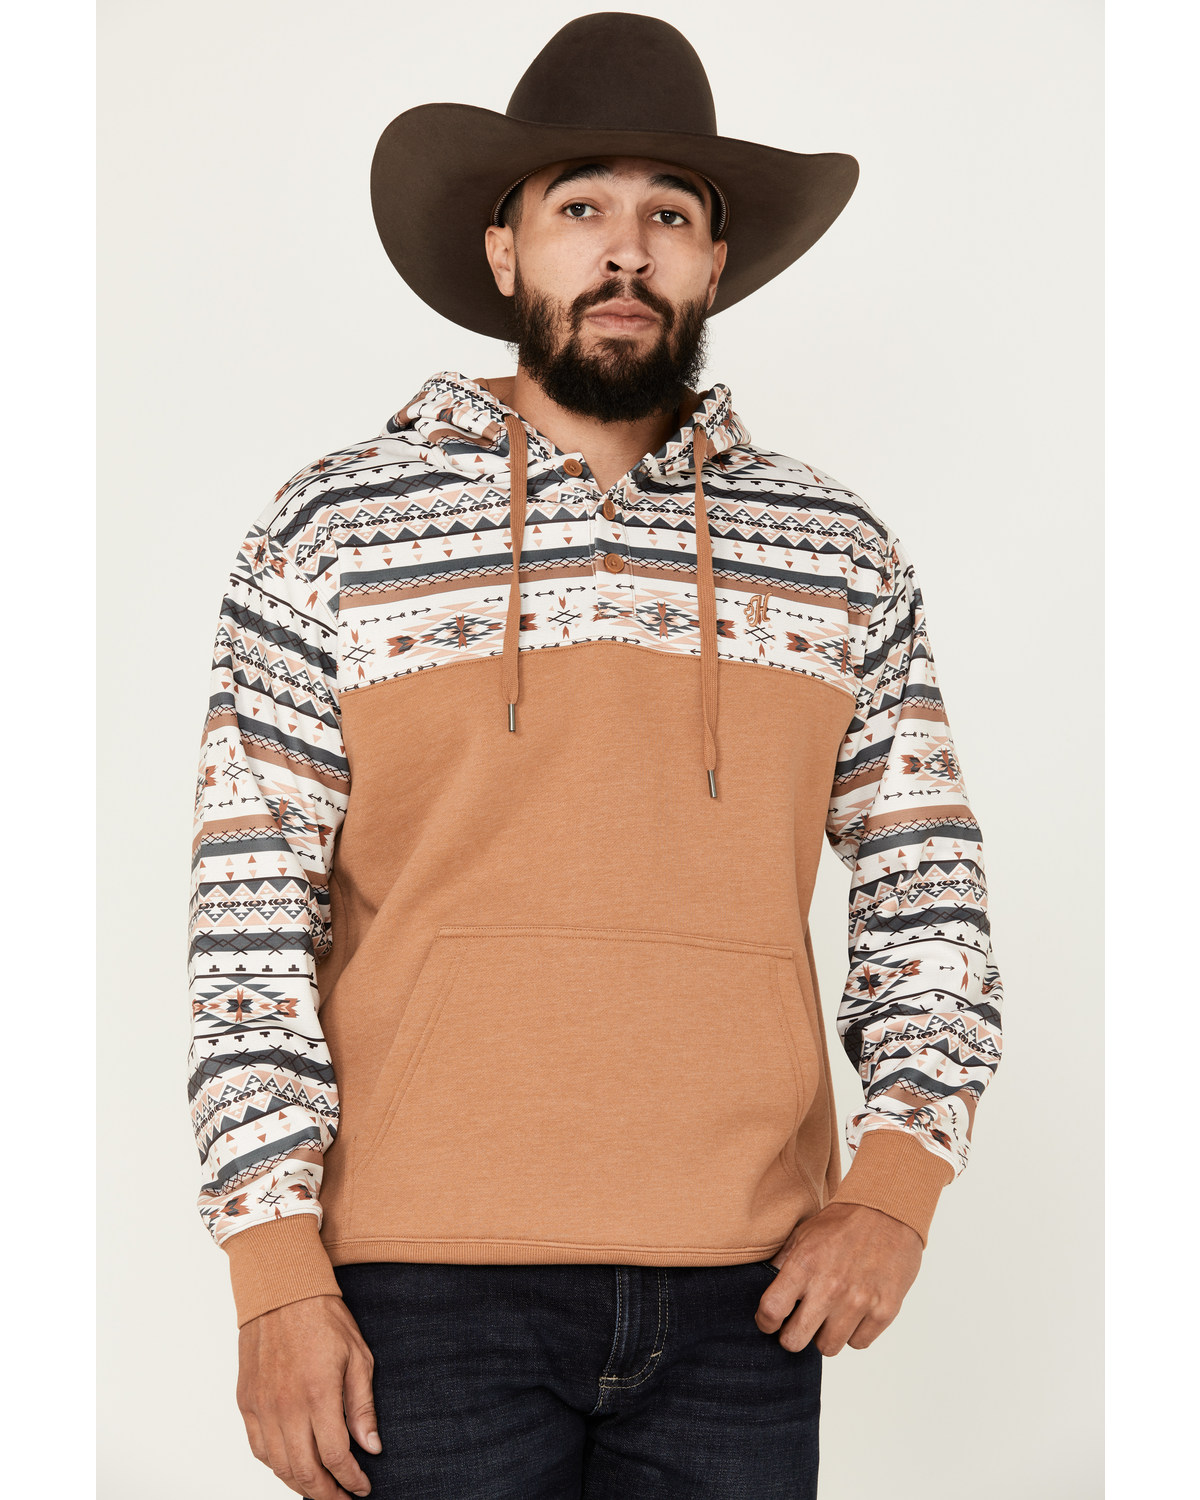 Hooey Men's Jimmy Southwestern Color Block Hooded Sweatshirt